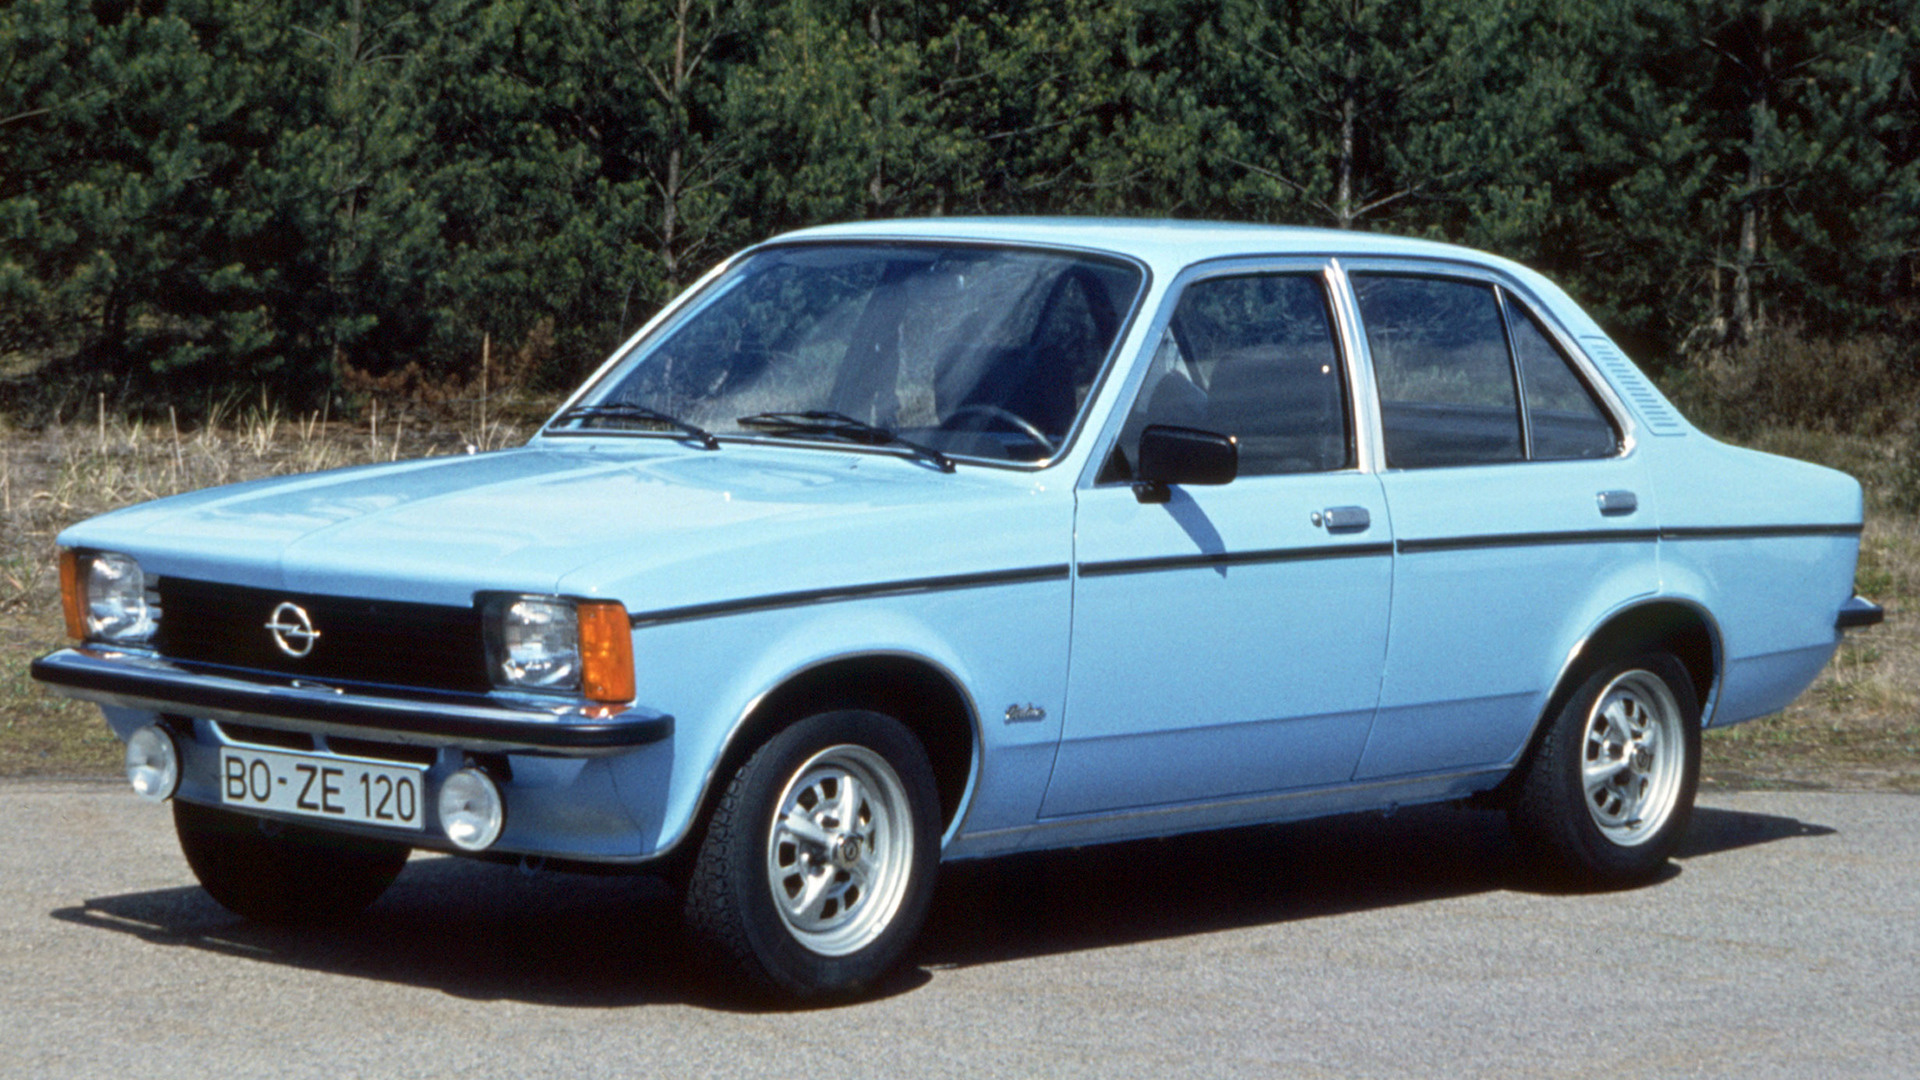 1977 Opel Kadett - Papéis de Parede e Imagens de Fundo em HD | Car ...